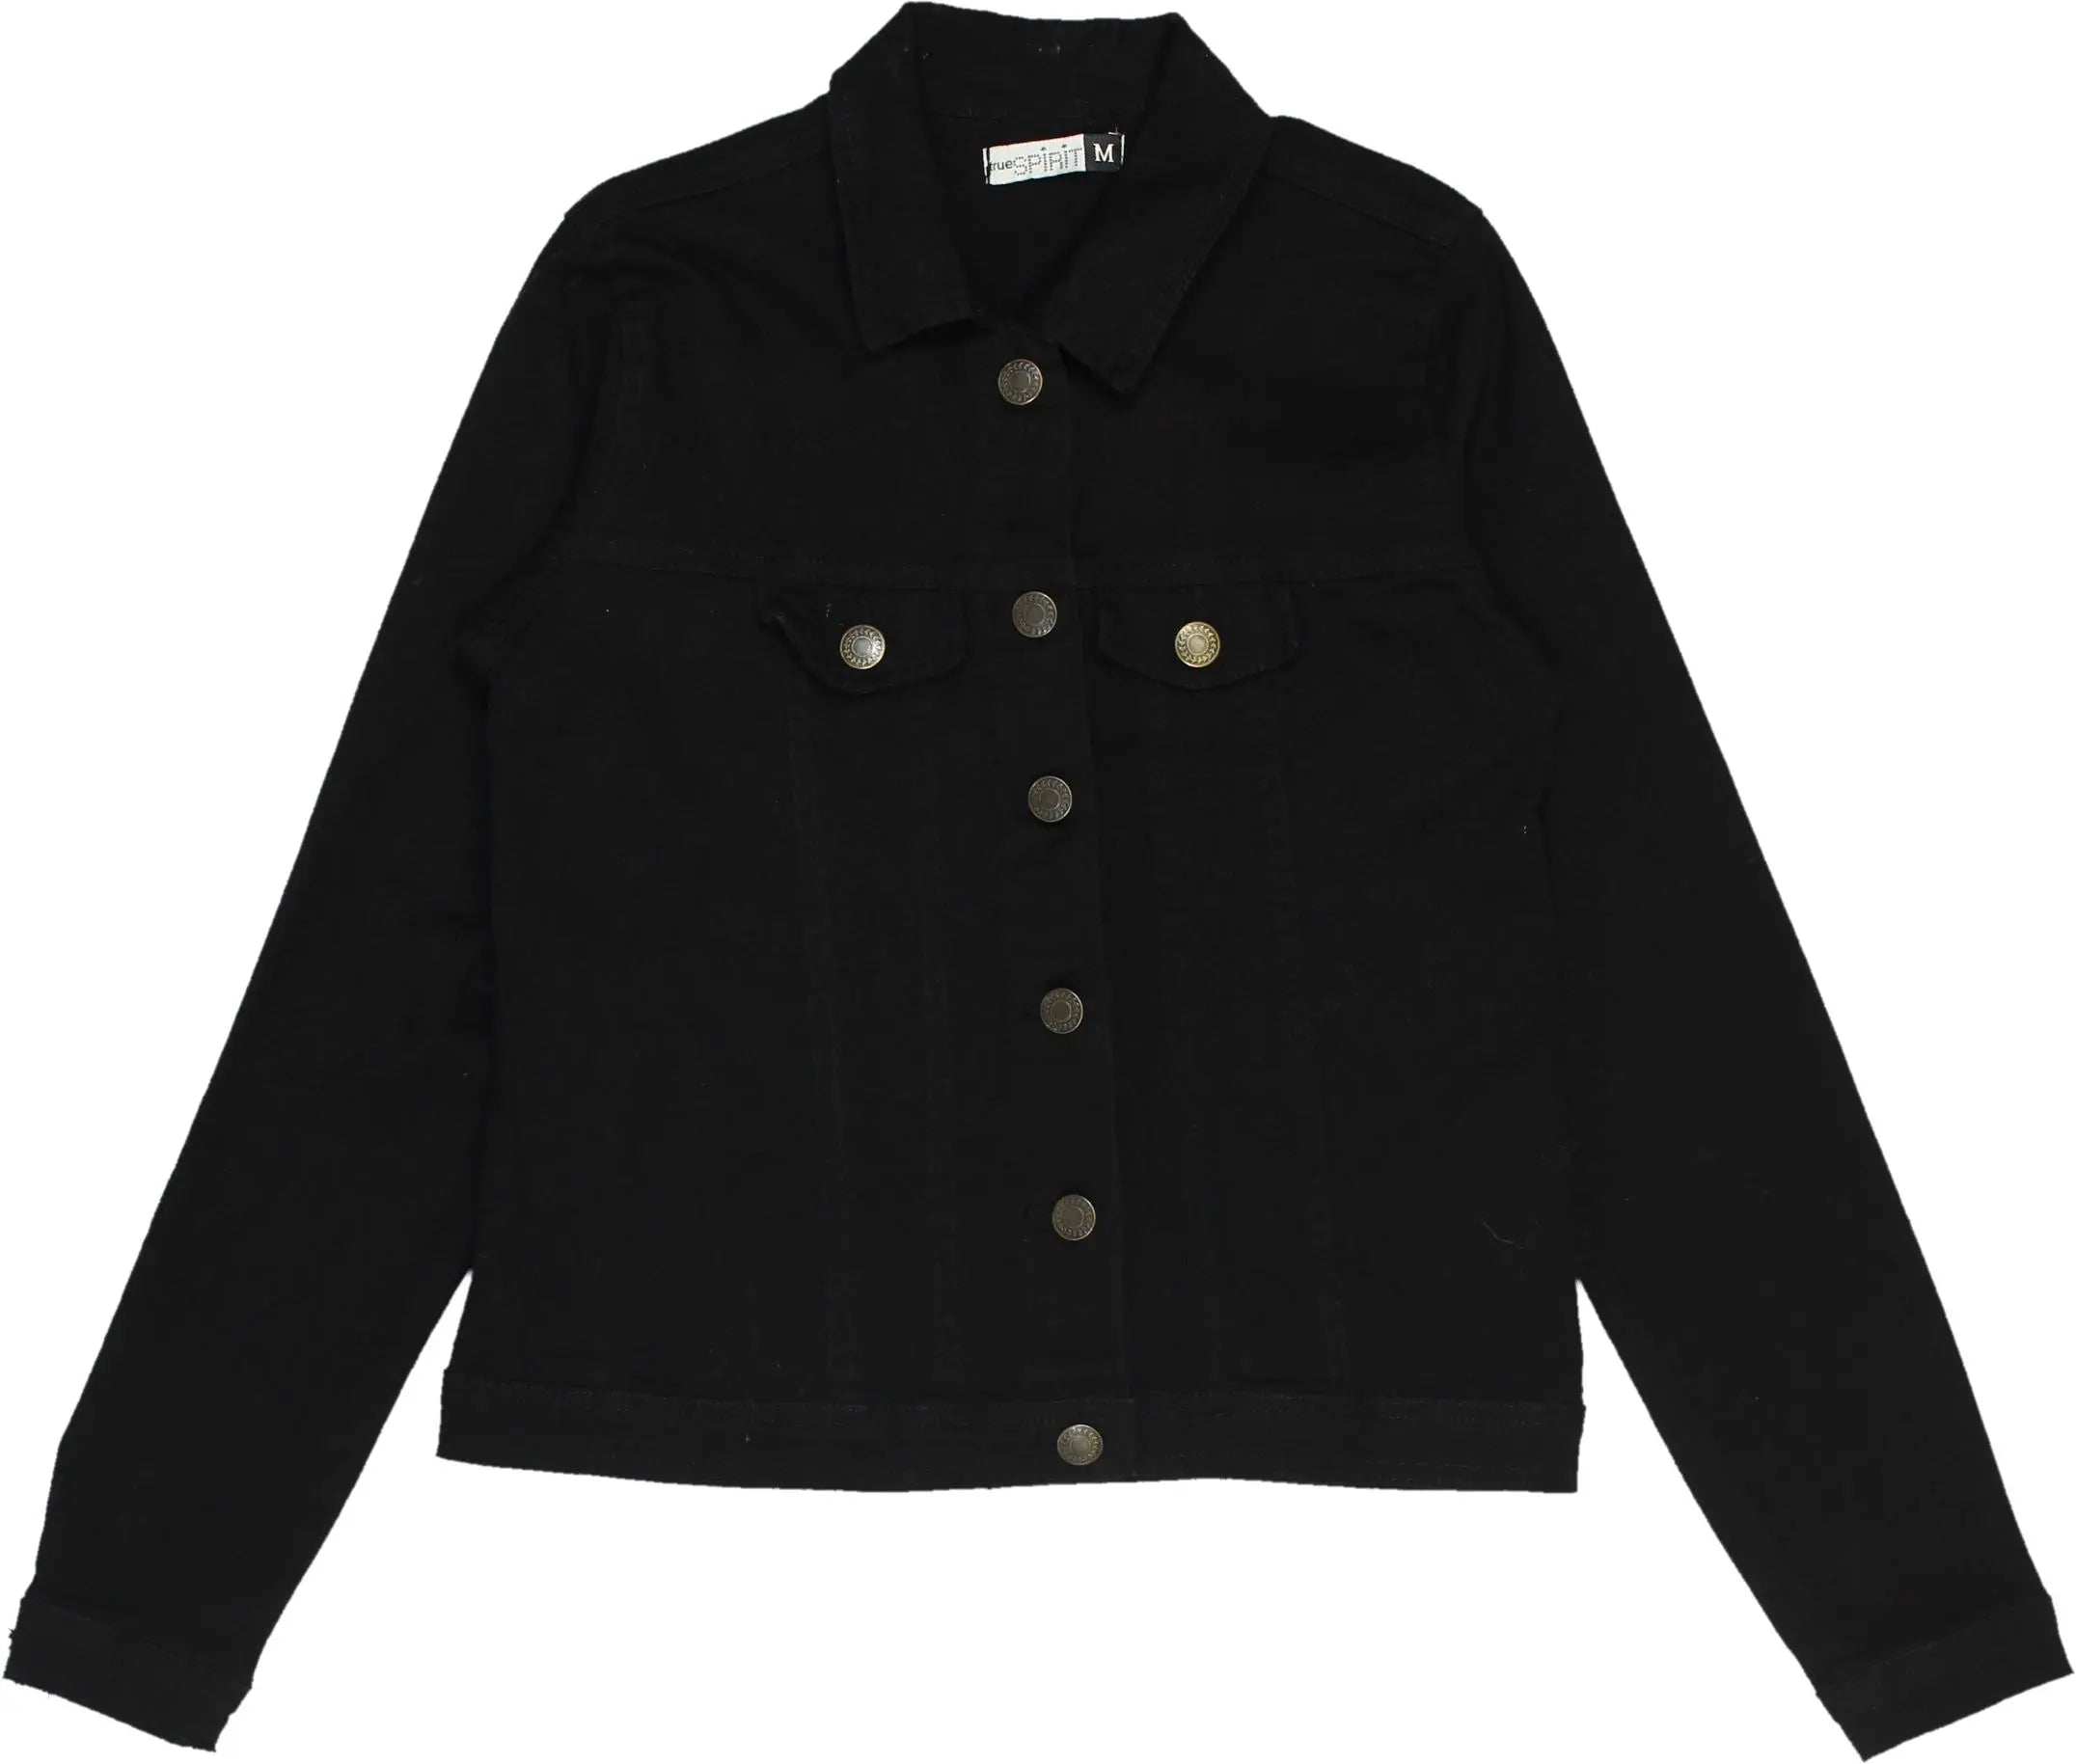 True Spirit - Black Denim Jacket- ThriftTale.com - Vintage and second handclothing